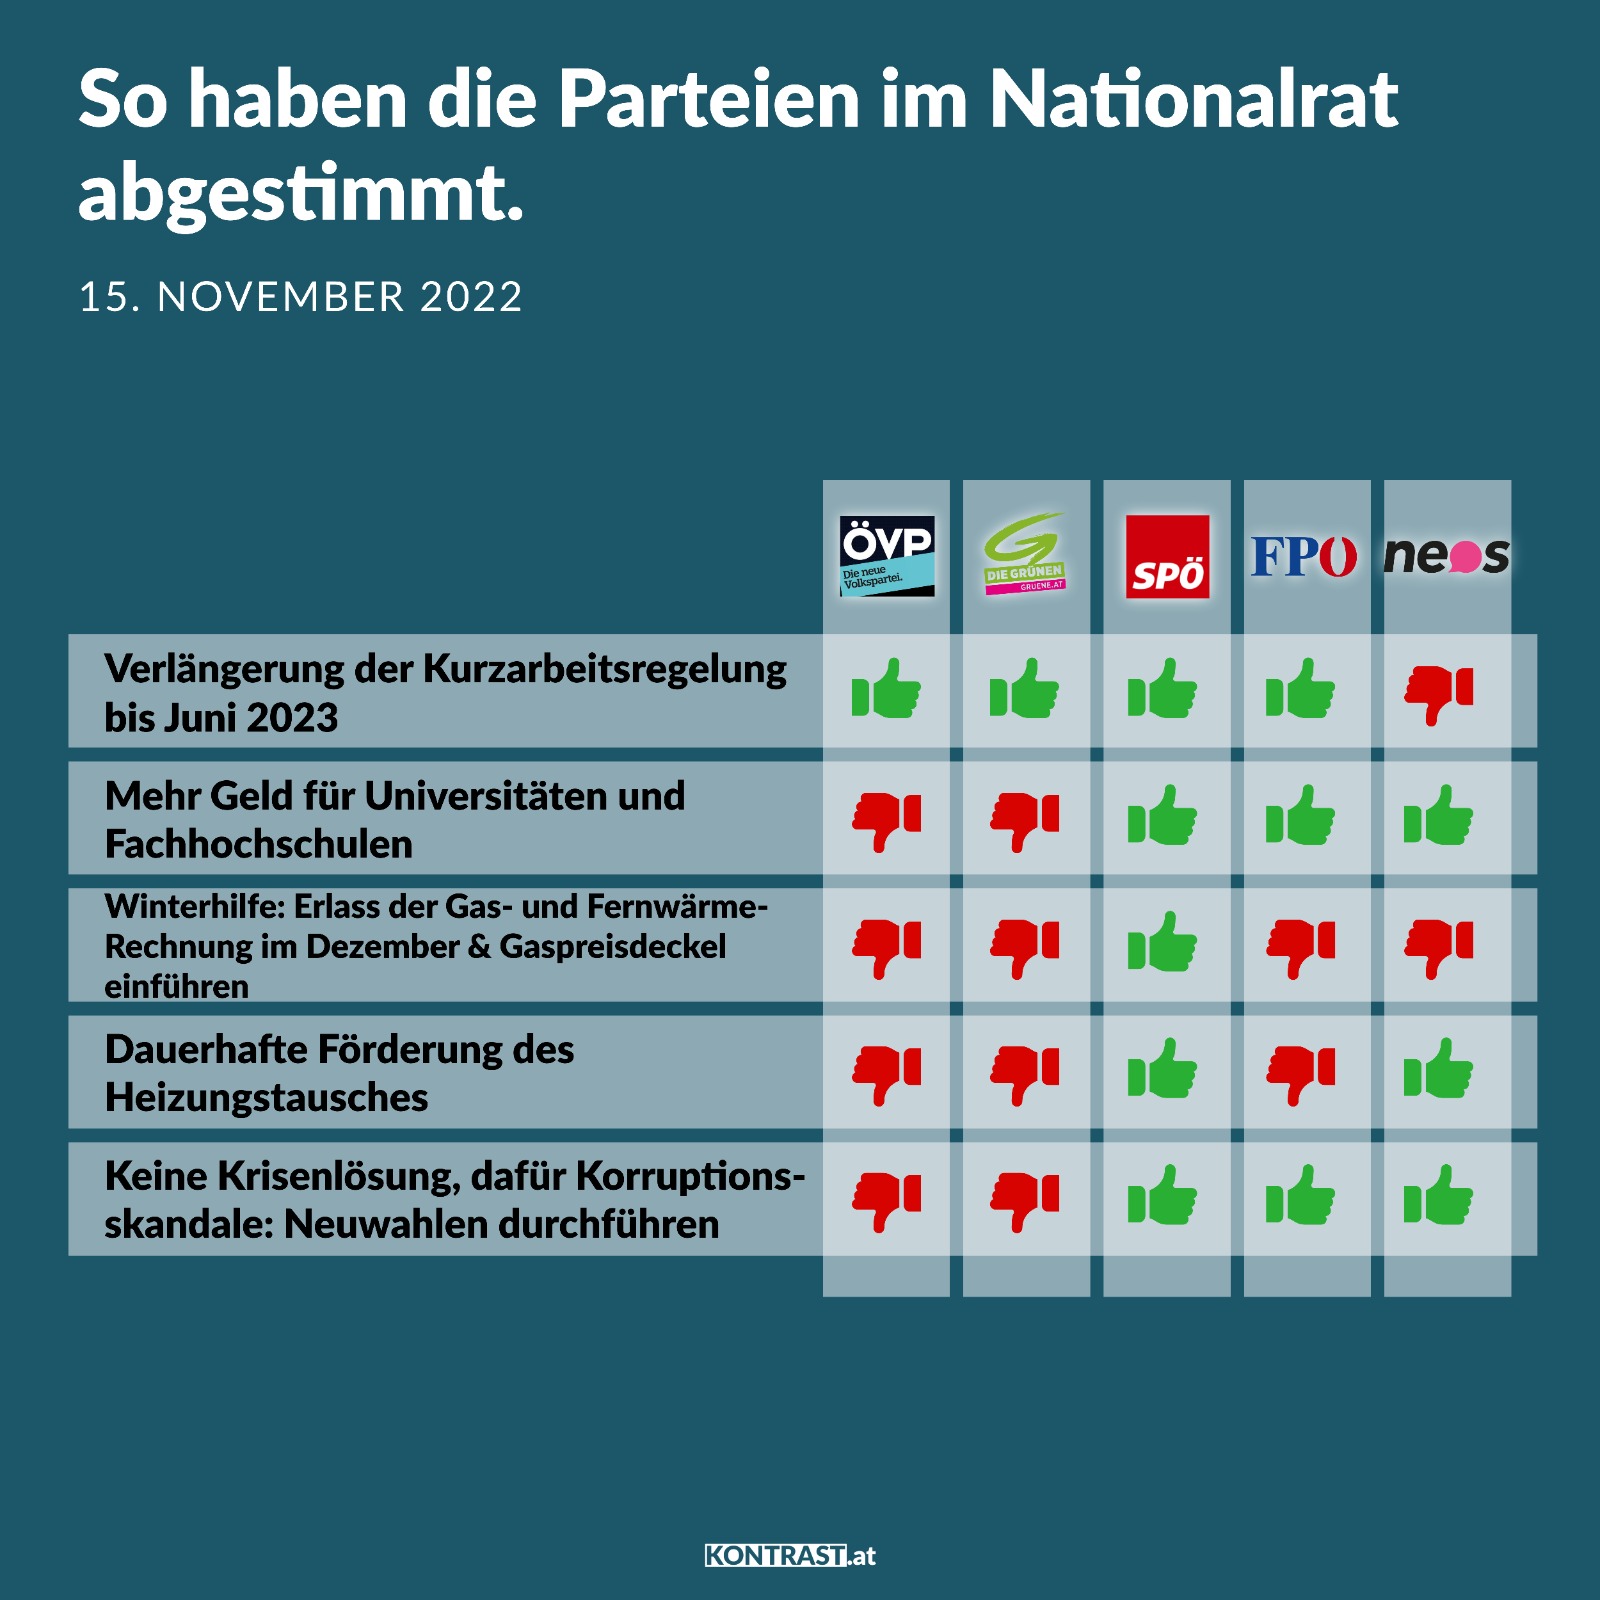 Budget-Nationalratssitzung-15-bis-18-November-So-haben-die-Parteien-abgestimmt